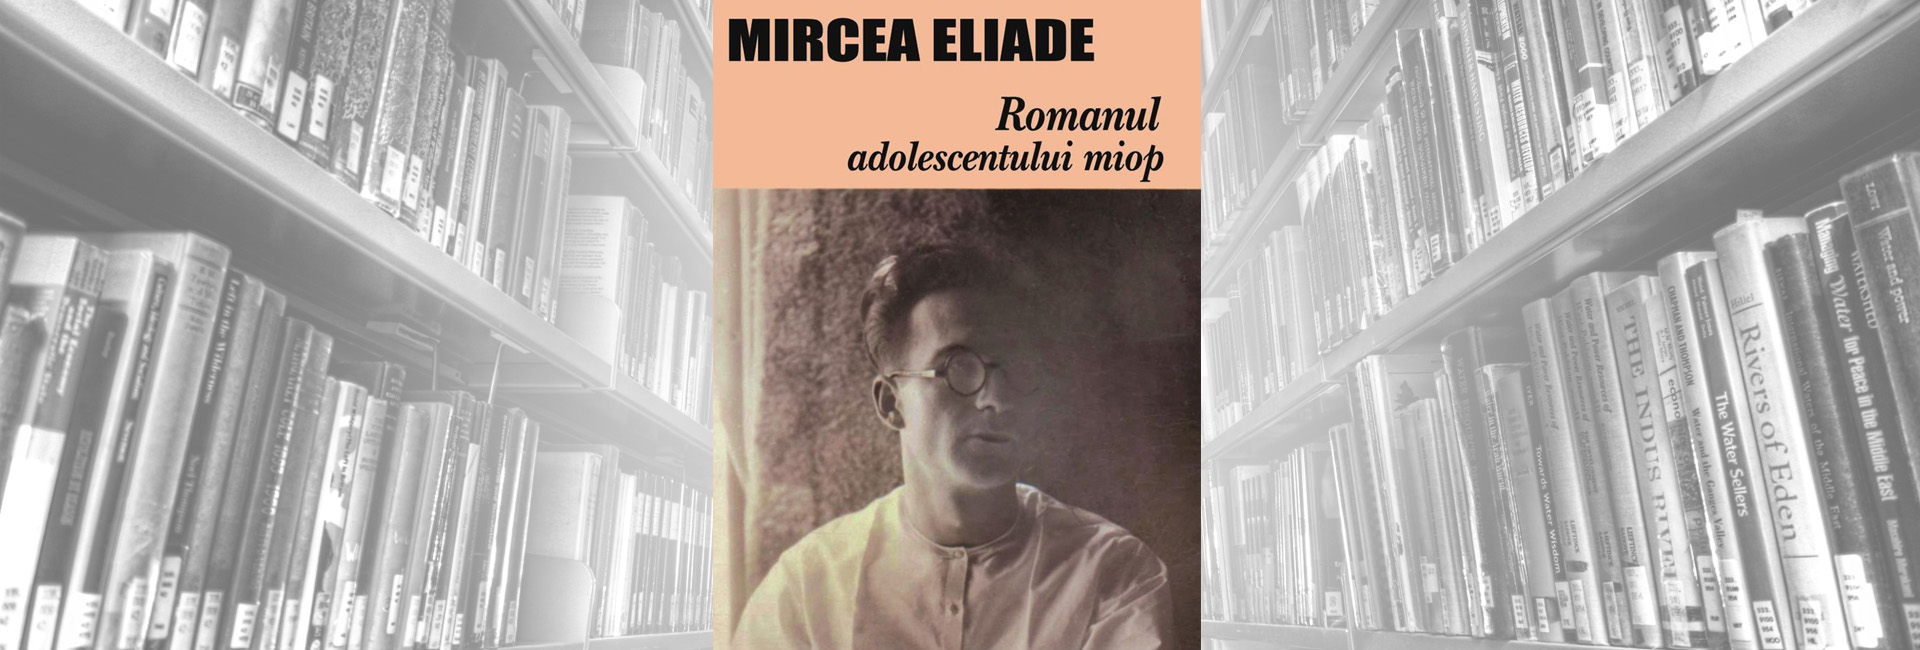 recenzie roman Mircea Eliade Romanul adolescentului miop jurnal de tinereţe slider